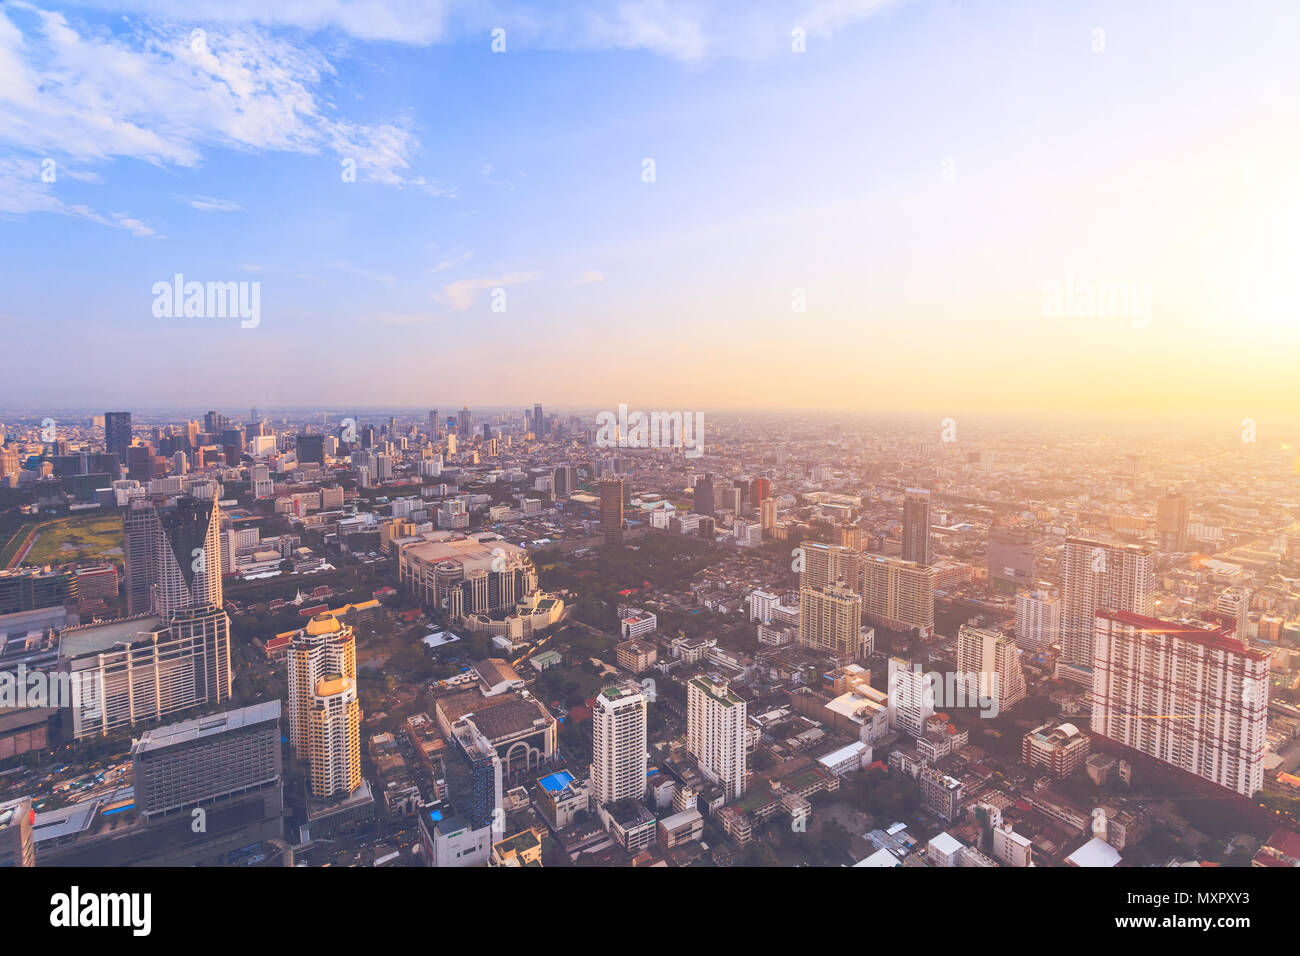 Die atemberaubende Panoramasicht auf Bangkok, die Hauptstadt und die bevölkerungsreichste Stadt des Königreichs Thailand. Erstaunlich Stadtbild die modernen Wolkenkratzer, Straßen und öffentlichen Plätzen. Luftaufnahme. Stockfoto